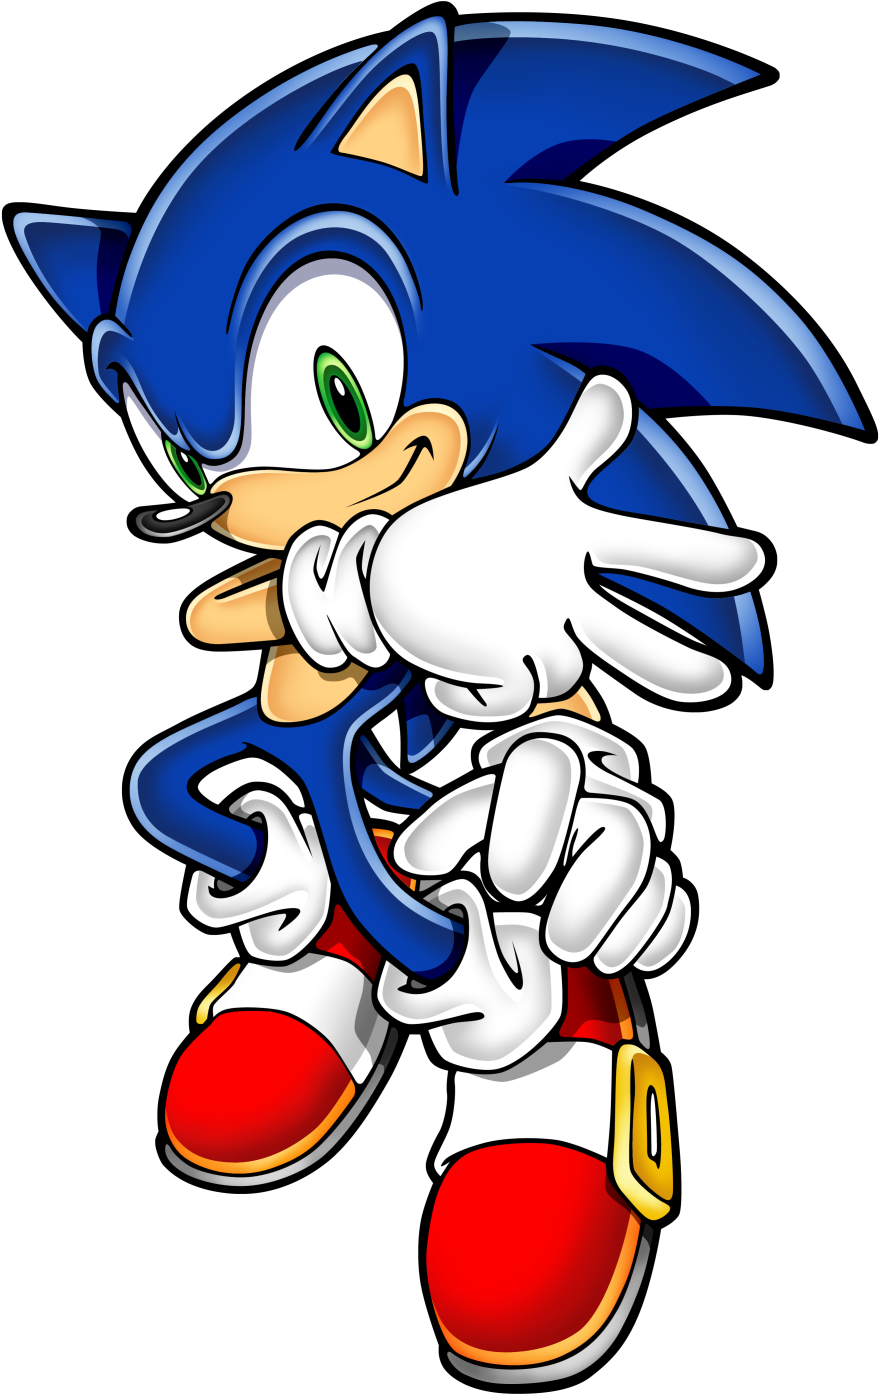 Sonic Advance 3 - Wikipedia